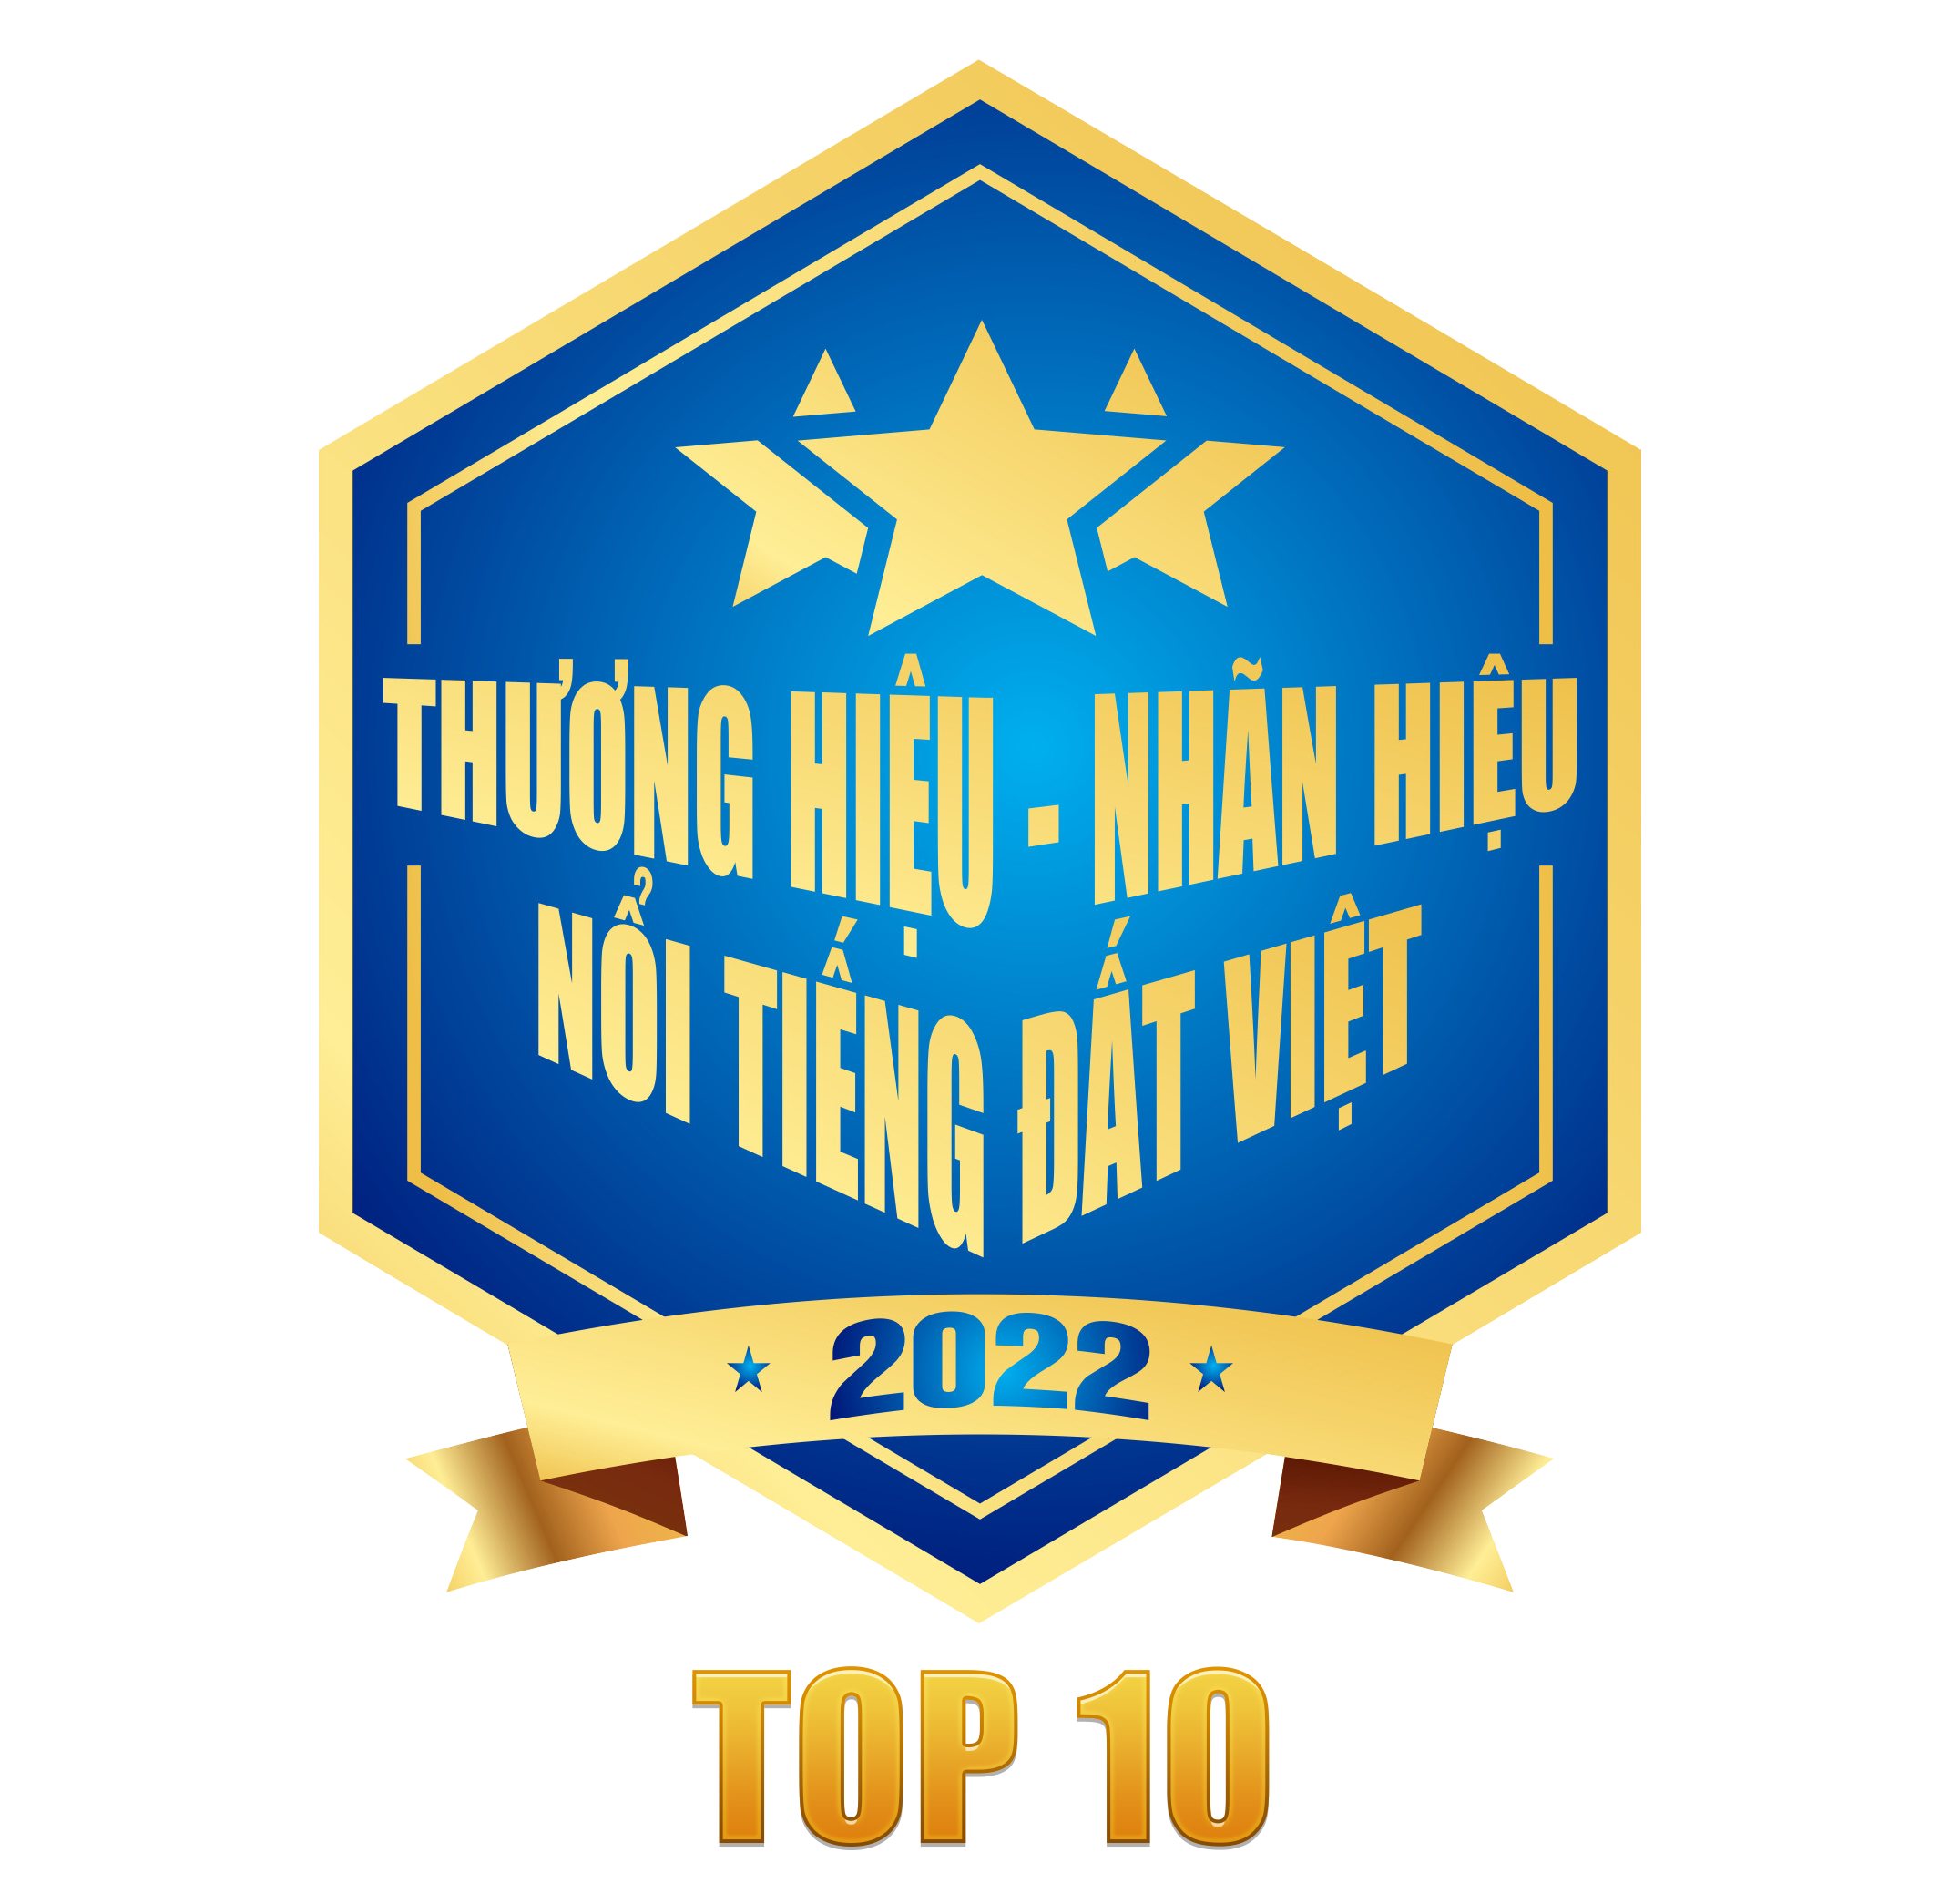 Top 10 thương hiệu nhãn hiệu nổi tiếng Đất Việt 2022